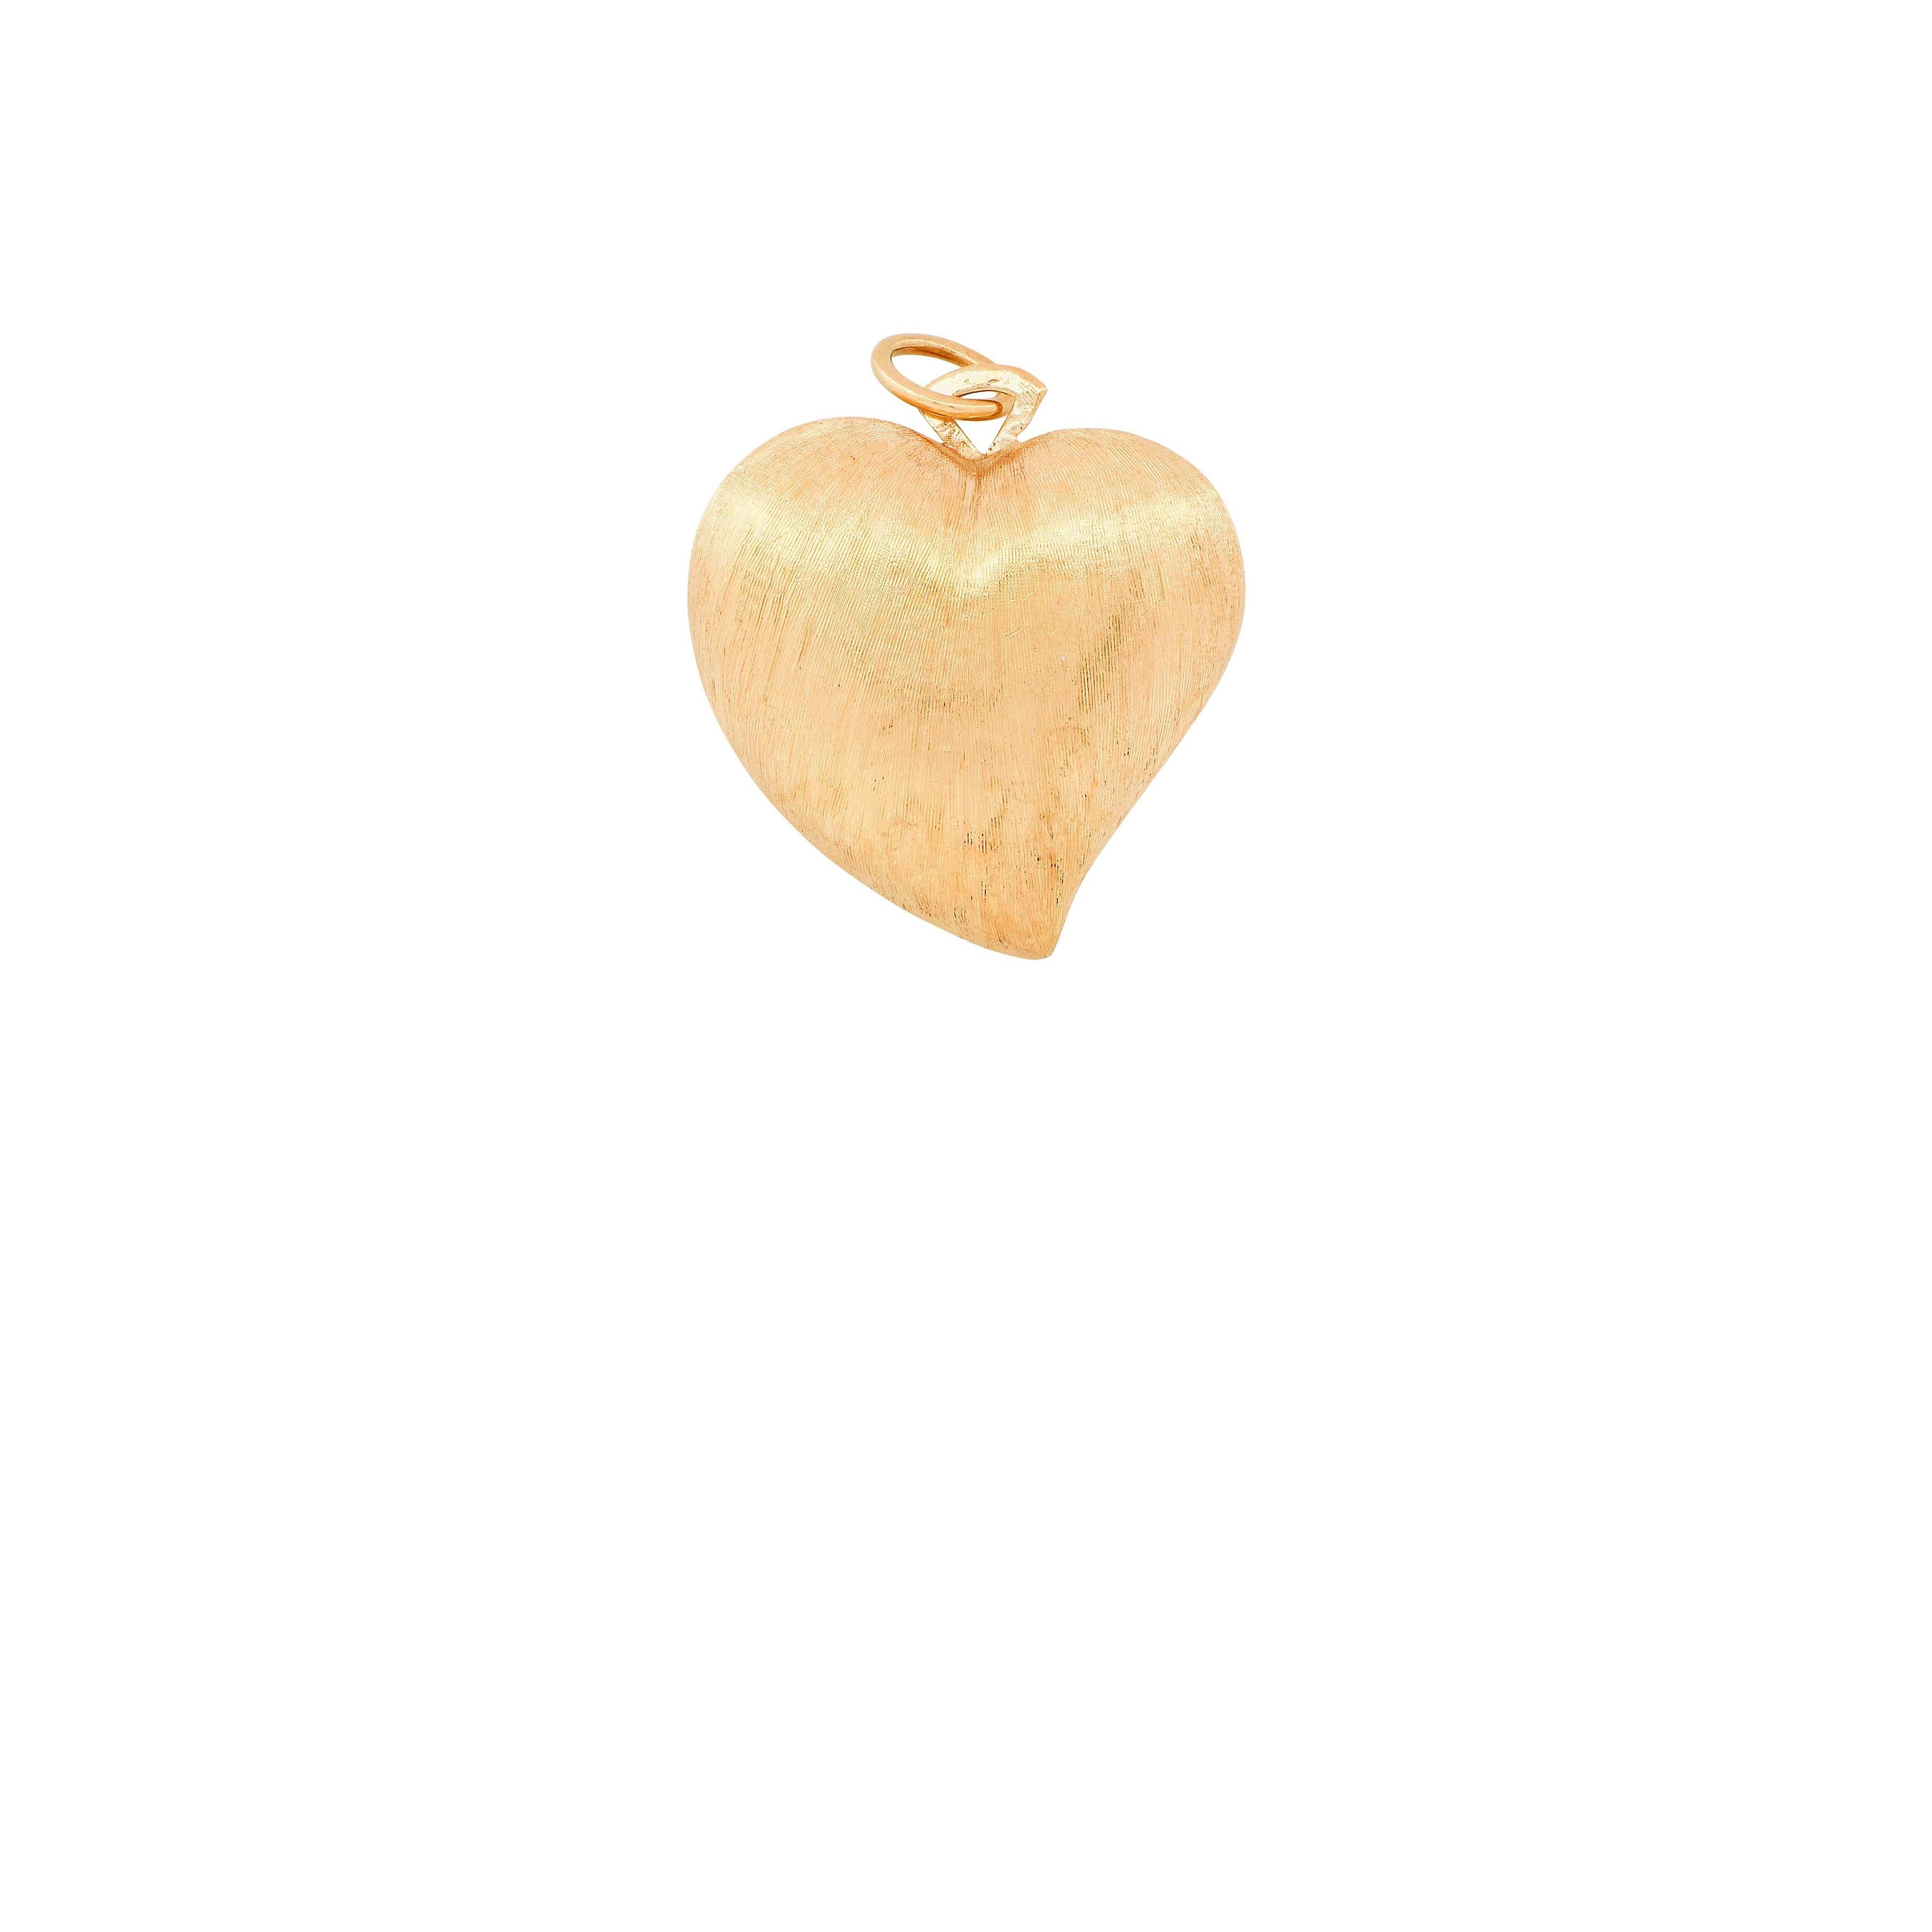 Brushed 18 Karat Yellow Gold Heart Shape Pendant

Metal Type: 18 Karat
Metal Weight: 10.9 Grams